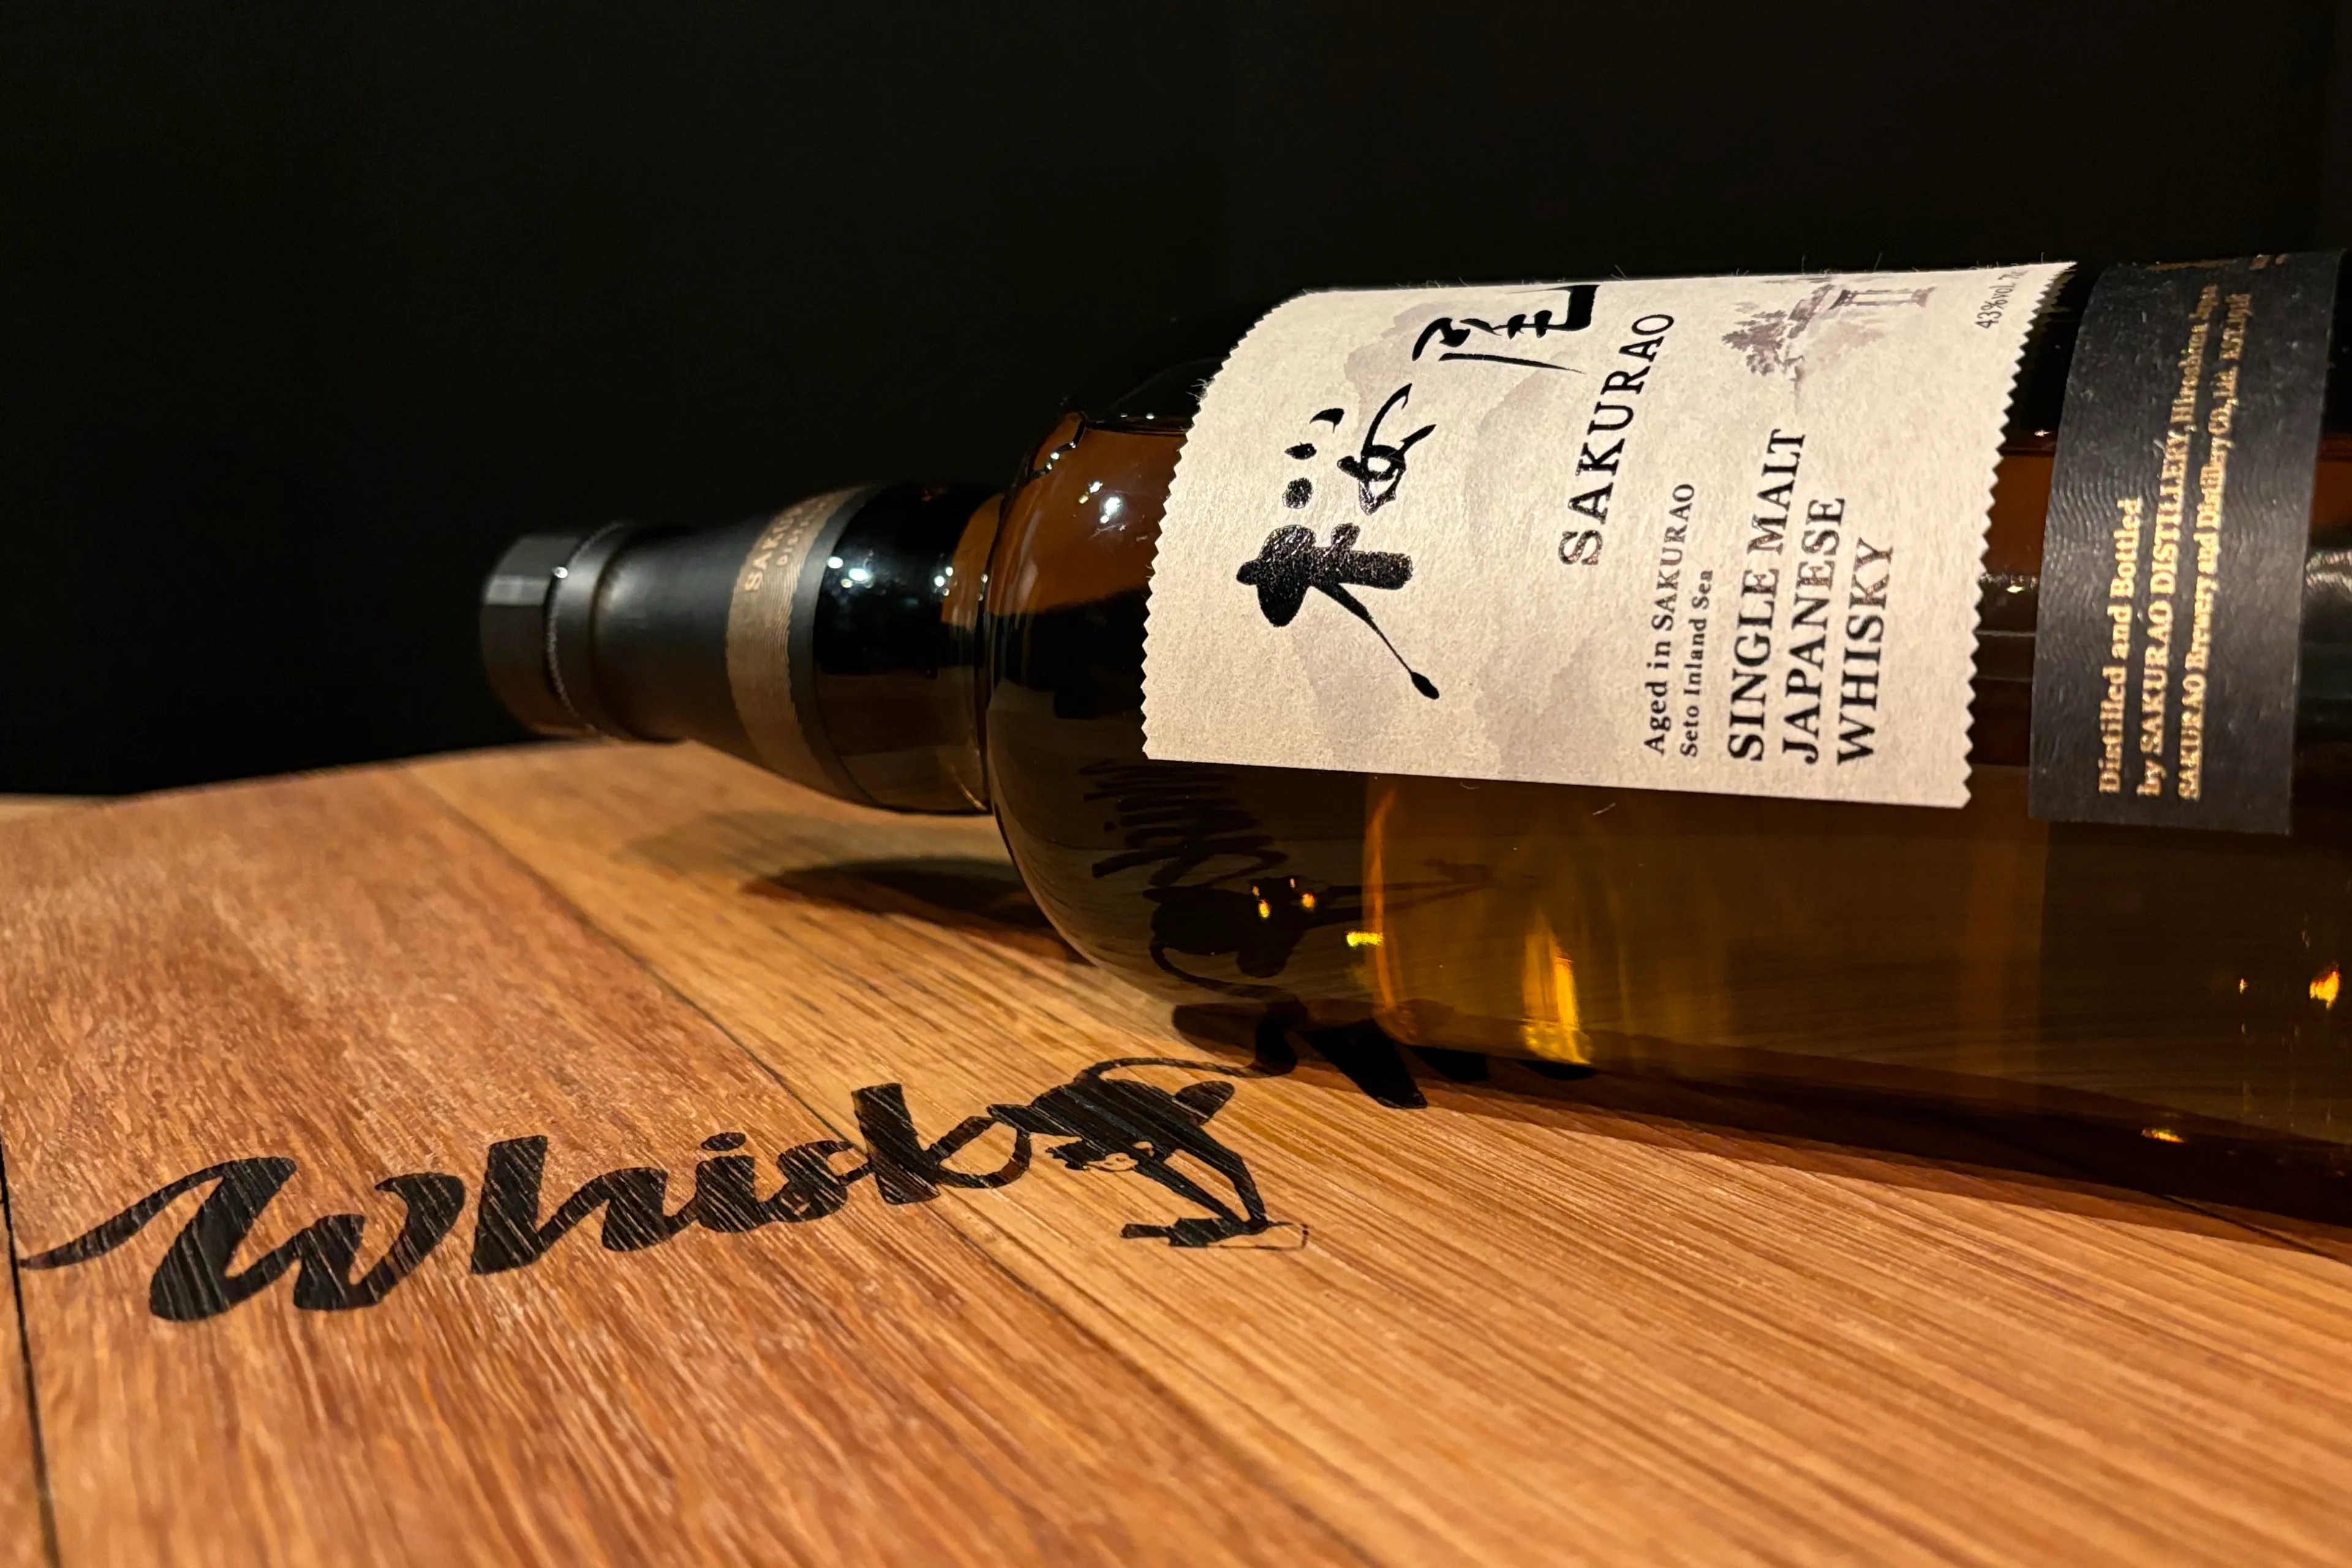 sakurao single malt whisky monkeys 1